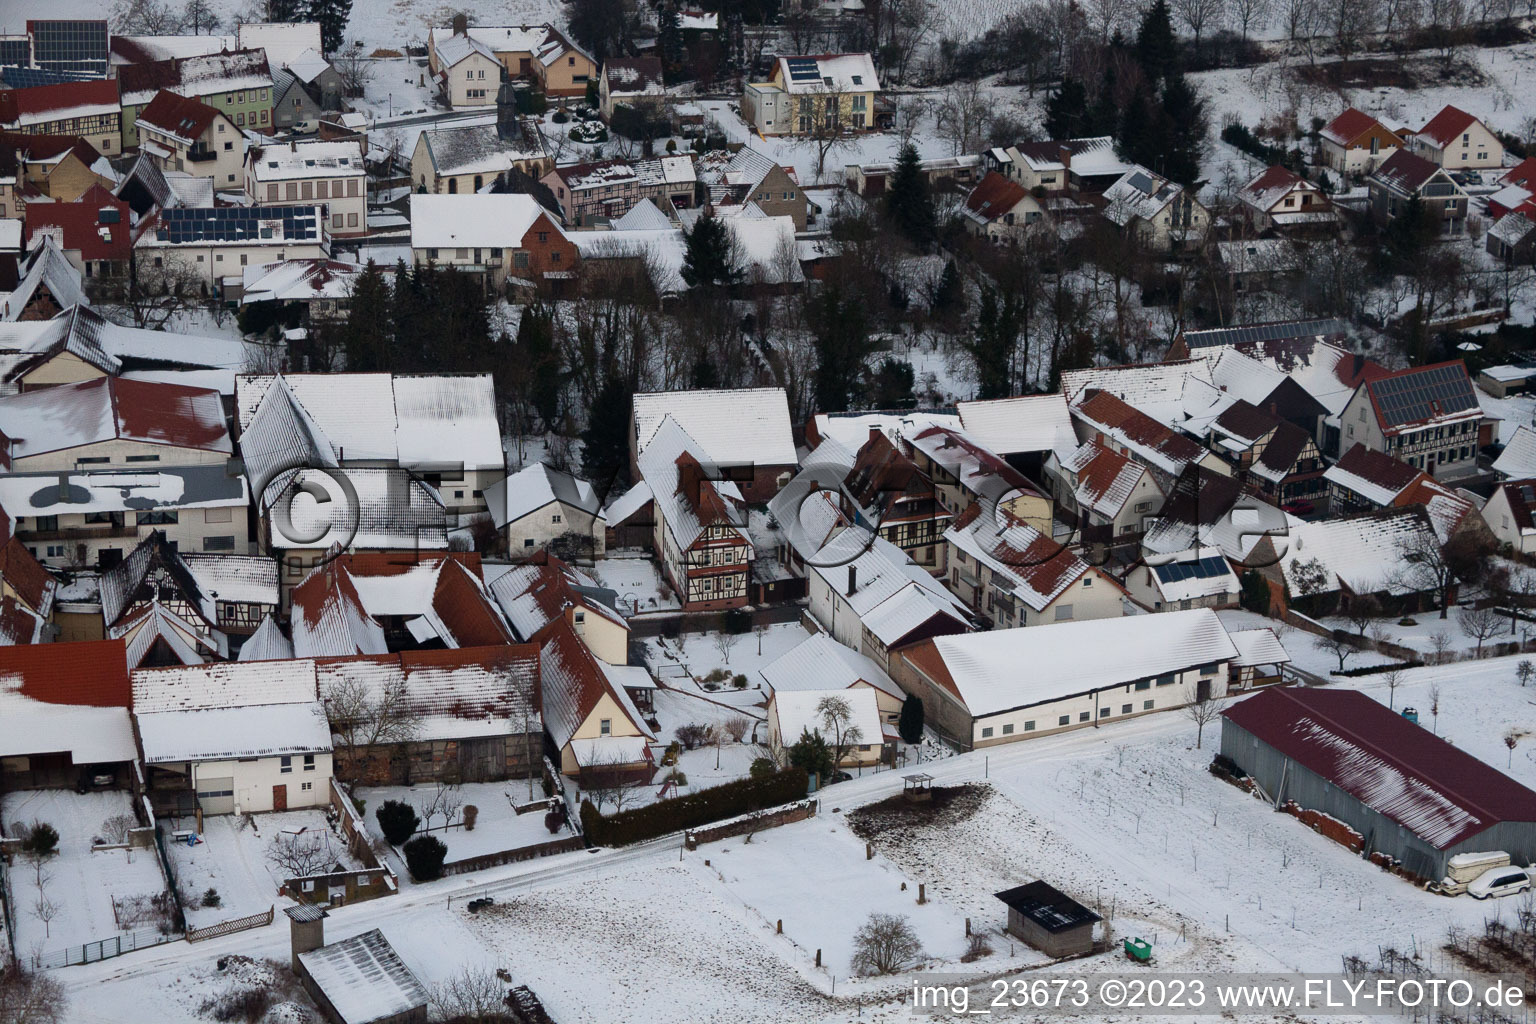 Dierbach im Bundesland Rheinland-Pfalz, Deutschland aus der Luft betrachtet